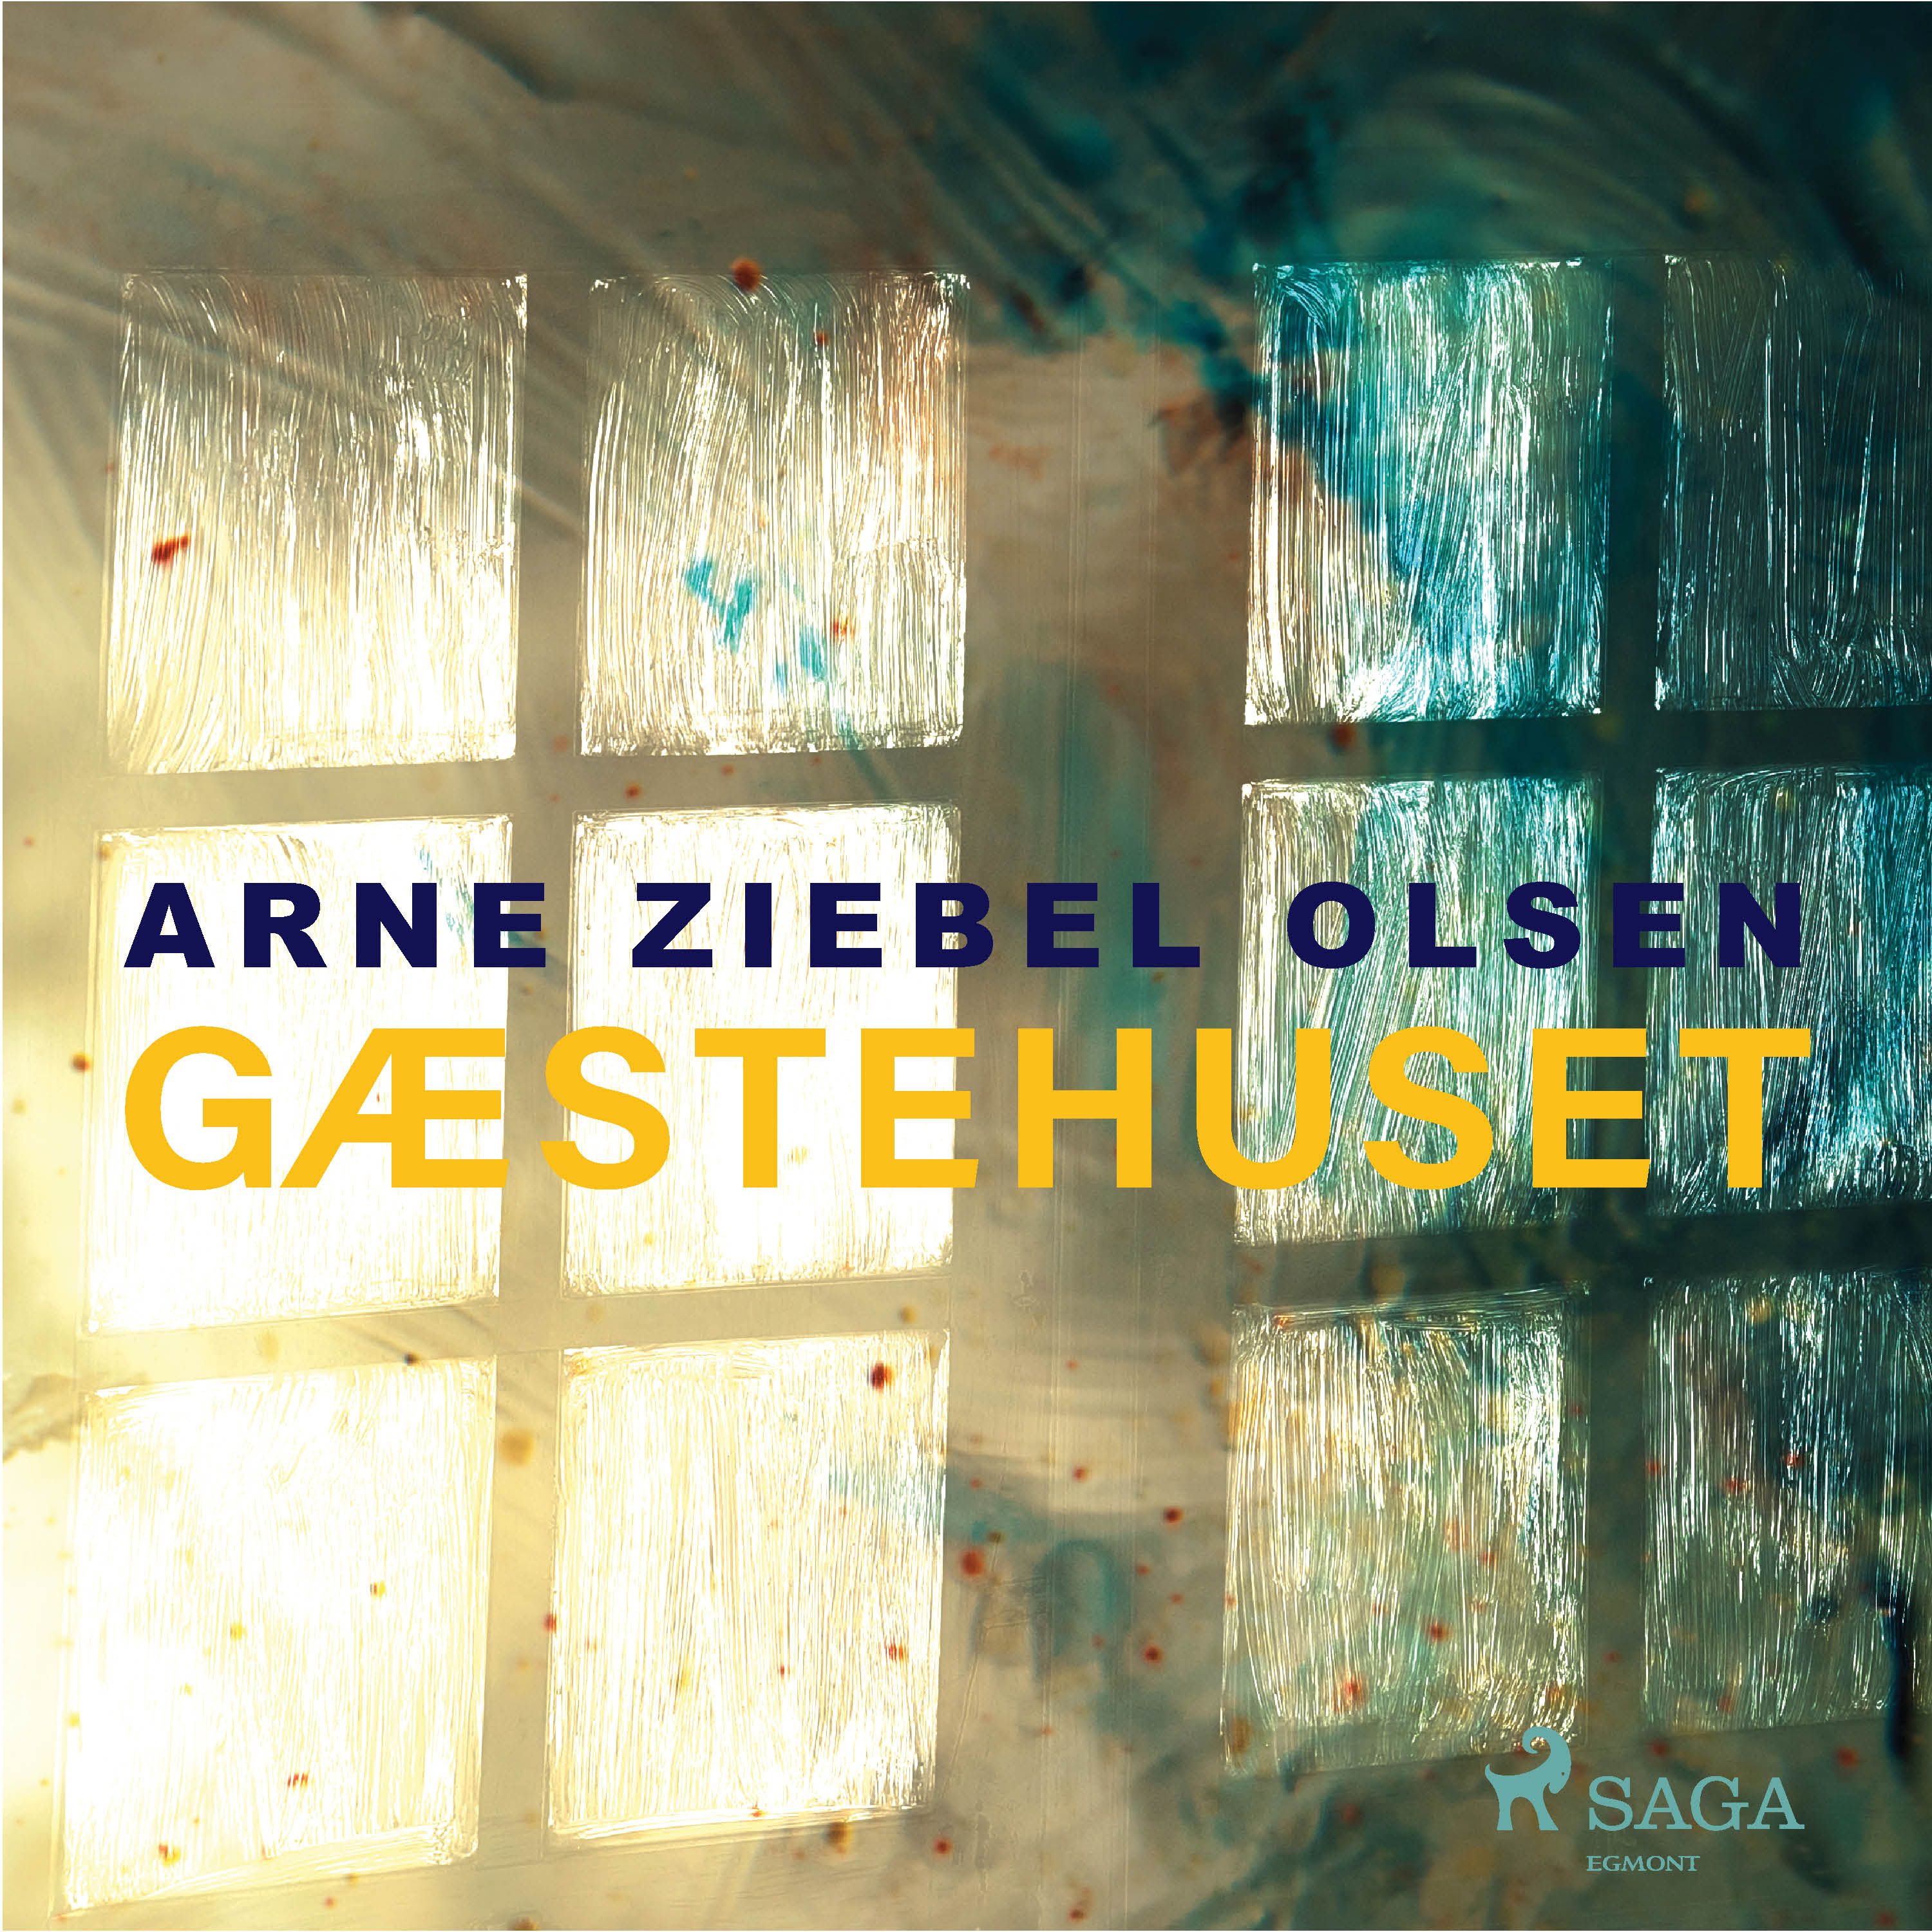 Gæstehuset, lydbog af Arne Ziebel Olsen